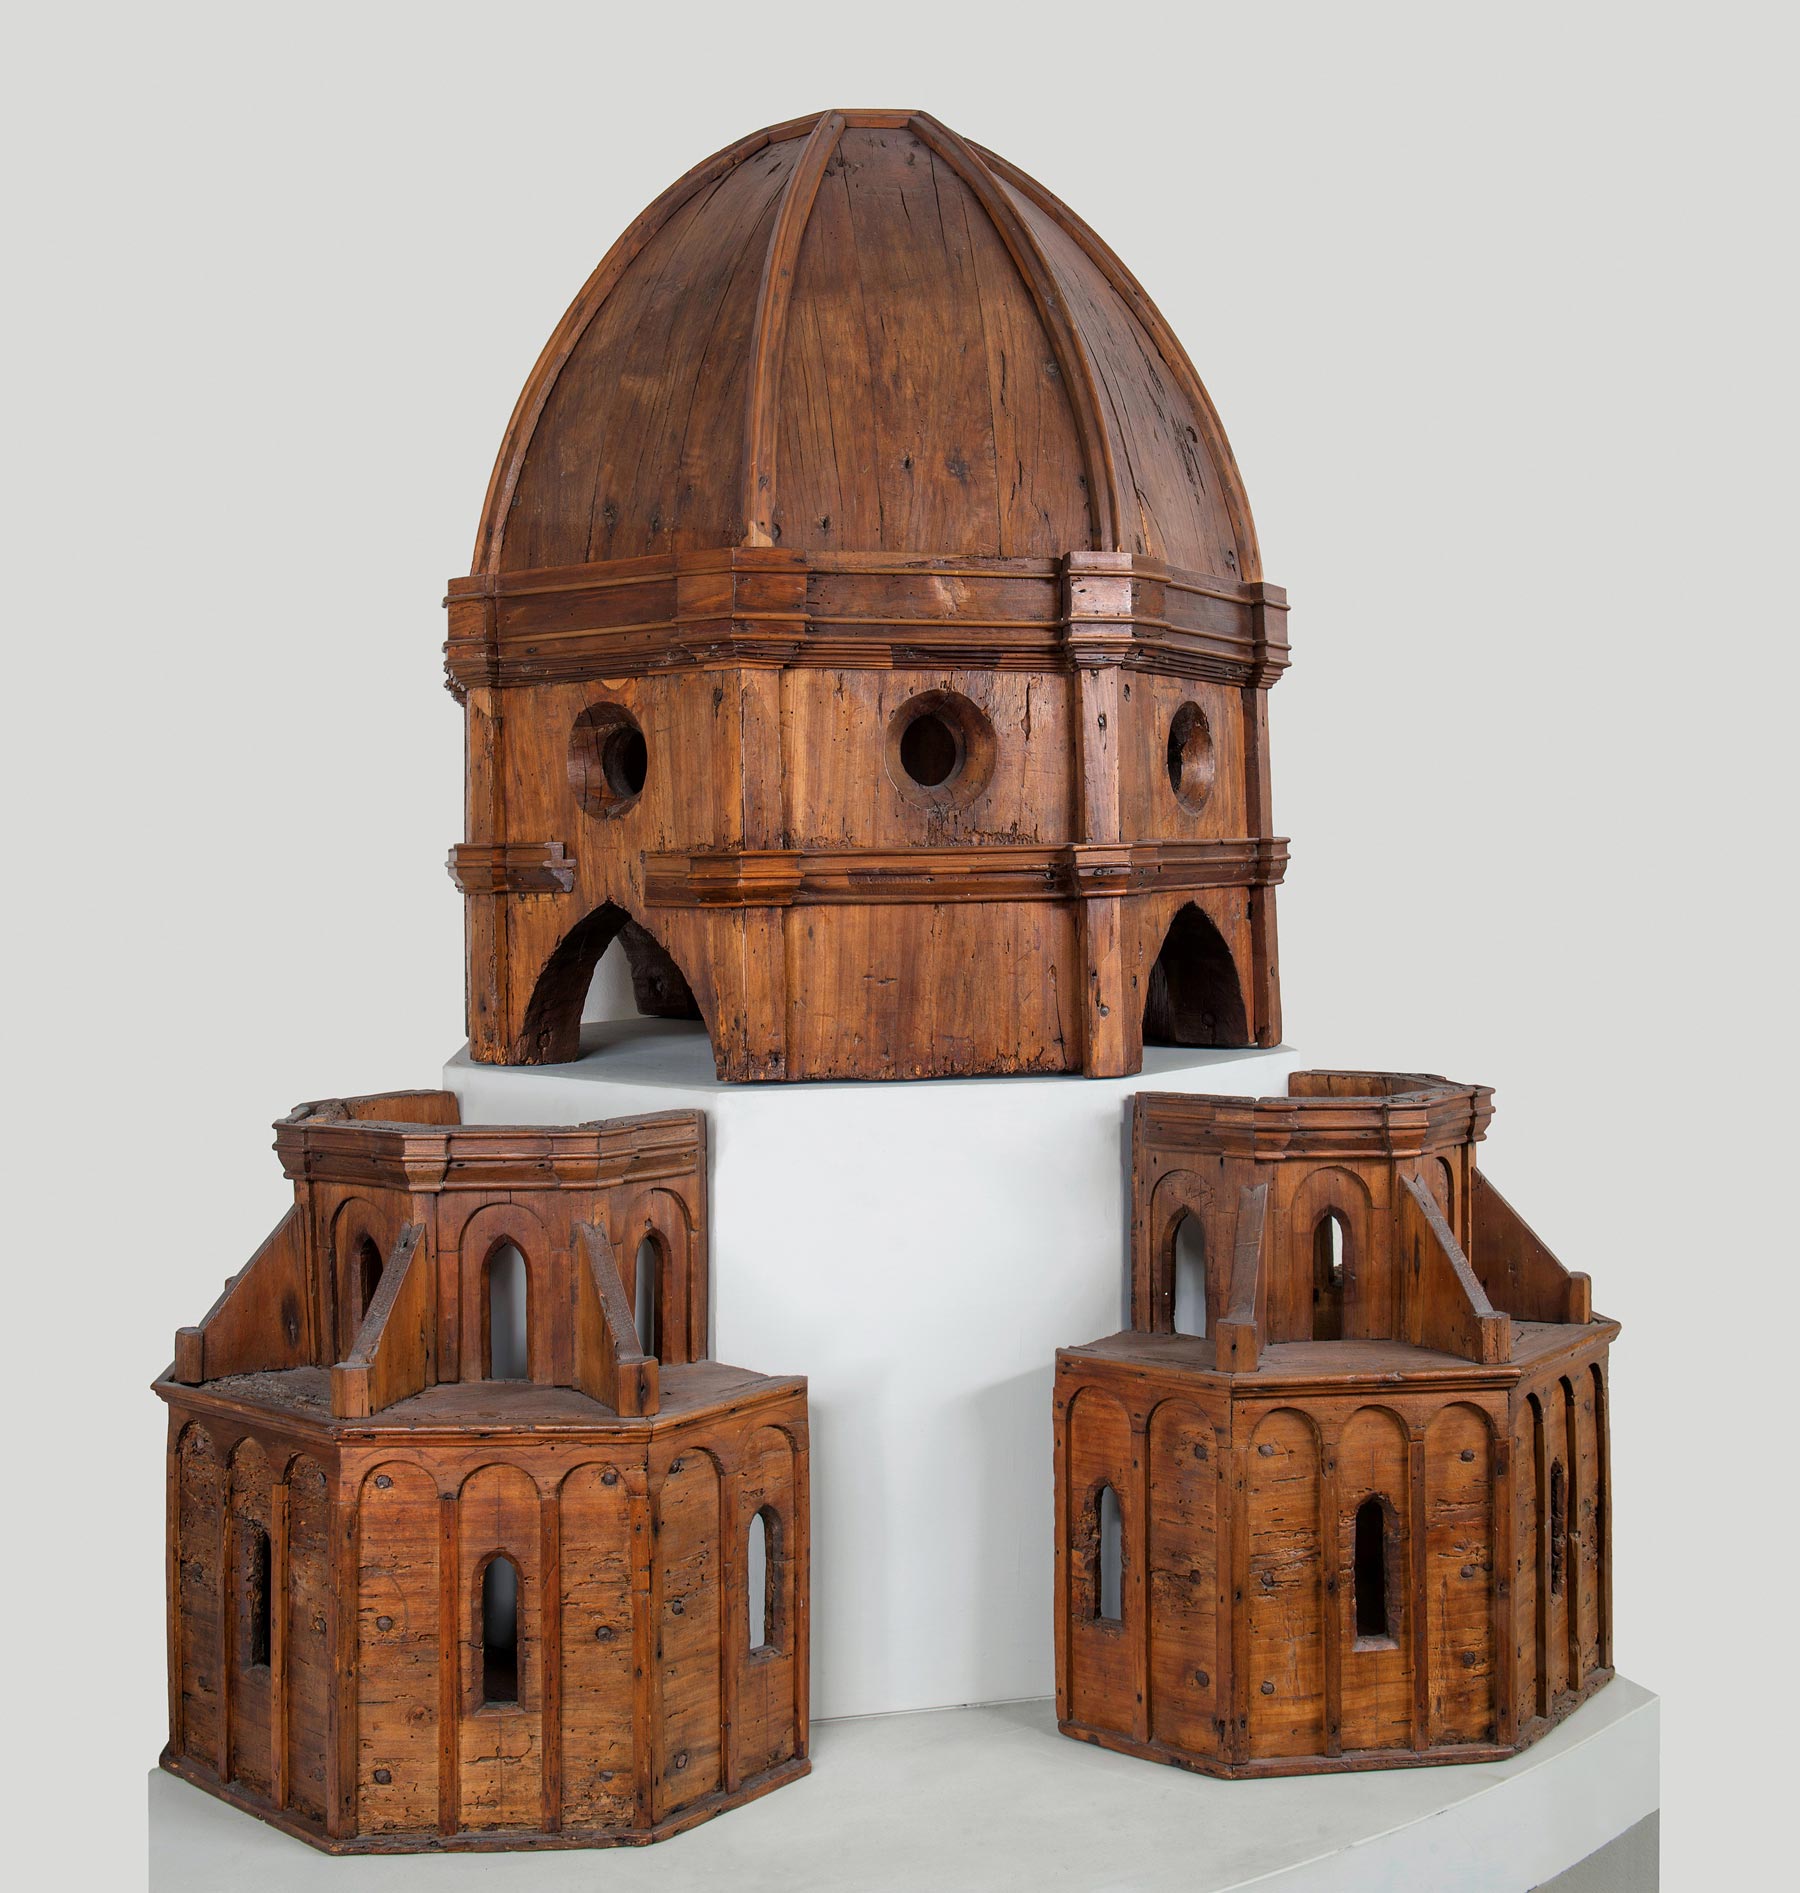 Filippo Brunelleschi (attribuito), Modello ligneo della Cupola (1420-1440 circa; legno; Firenze, Museo del Duomo). Ph. Credit Antonio Quattrone
